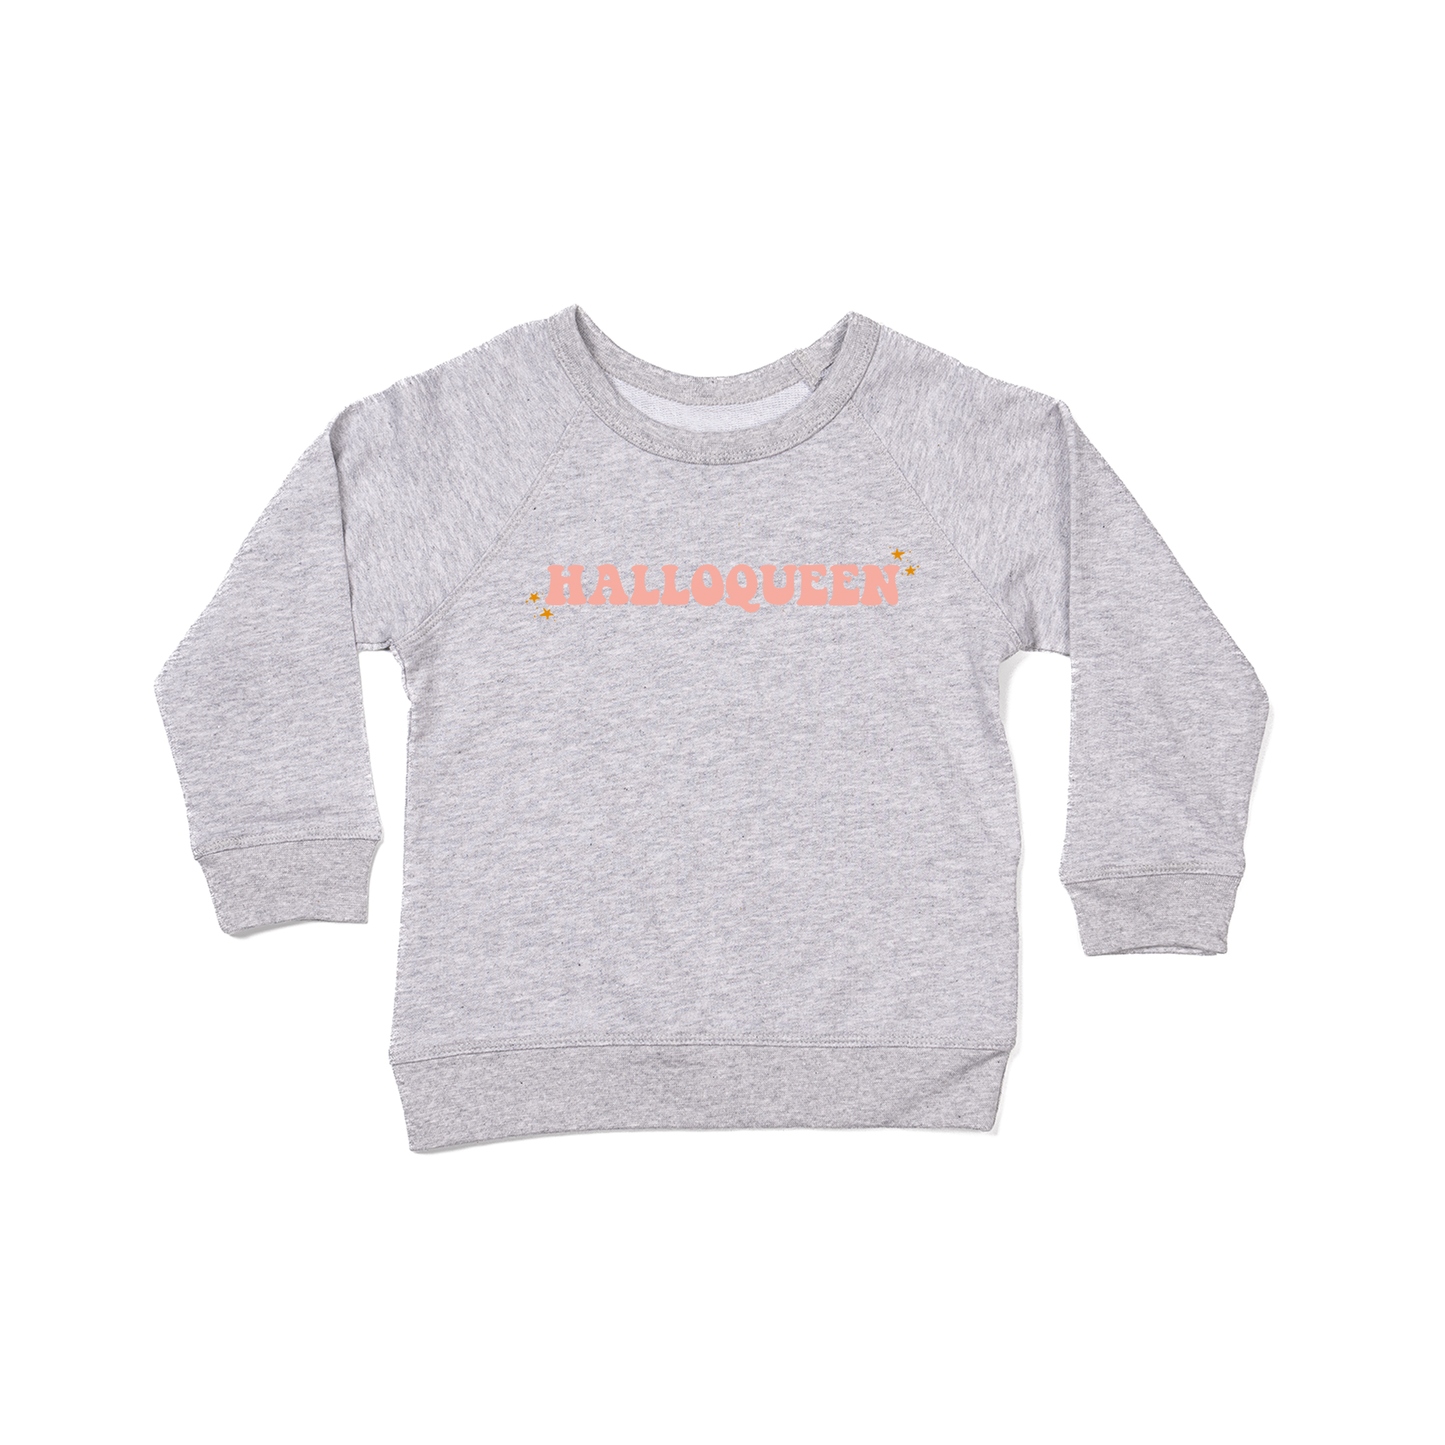 HALLOQUEEN - Kids Sweatshirt (Heather Gray)